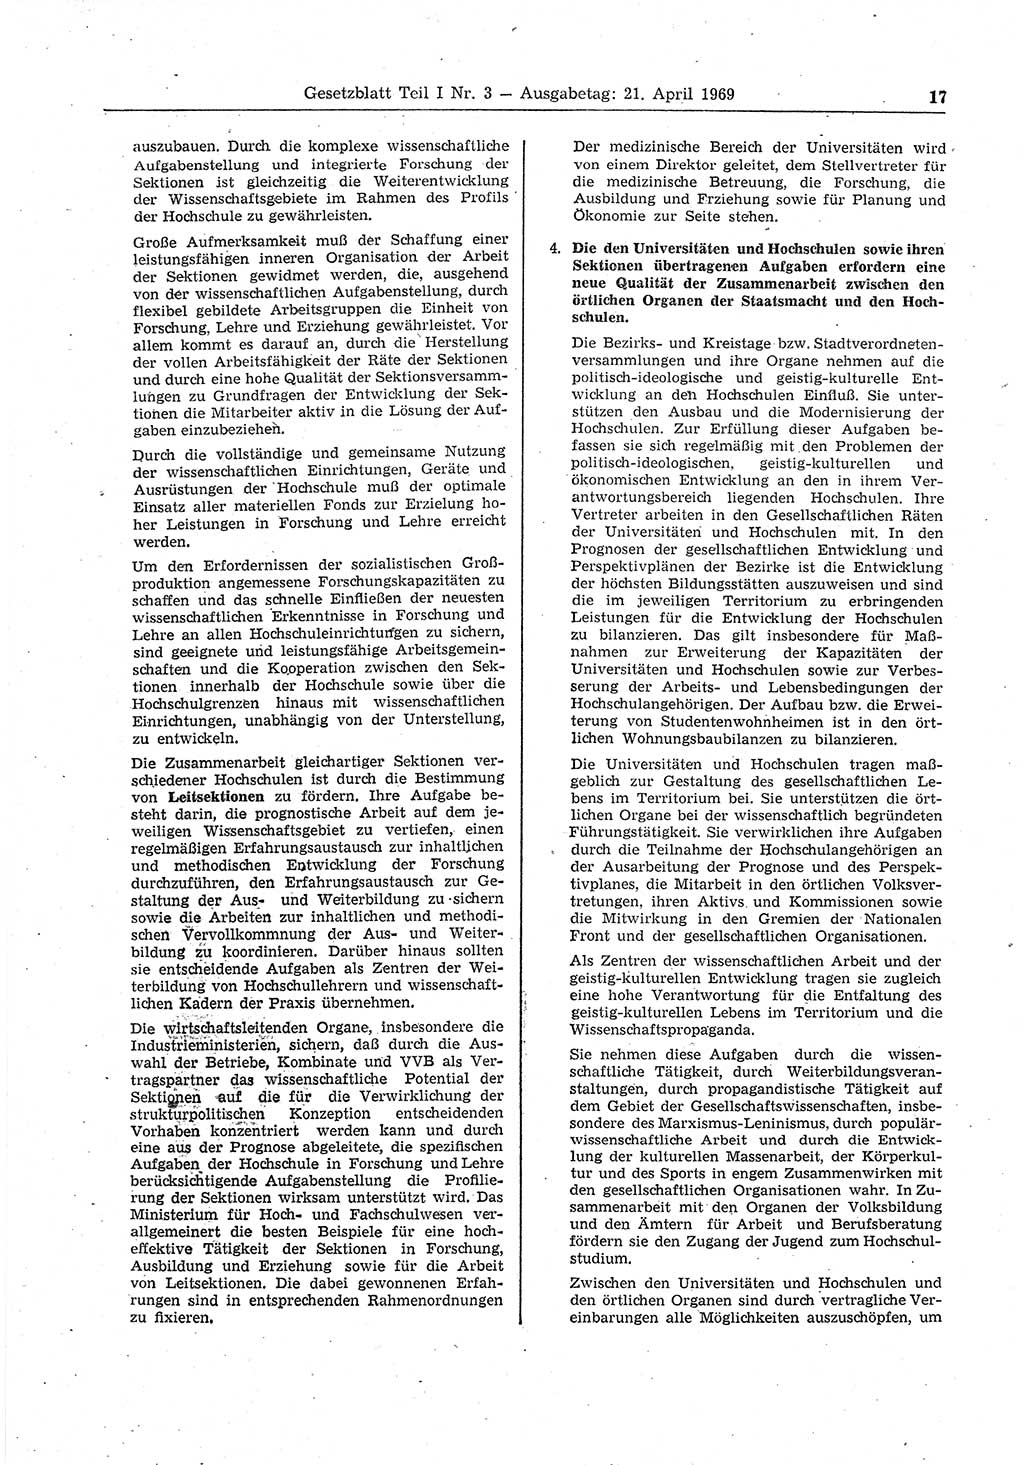 Gesetzblatt (GBl.) der Deutschen Demokratischen Republik (DDR) Teil Ⅰ 1969, Seite 17 (GBl. DDR Ⅰ 1969, S. 17)